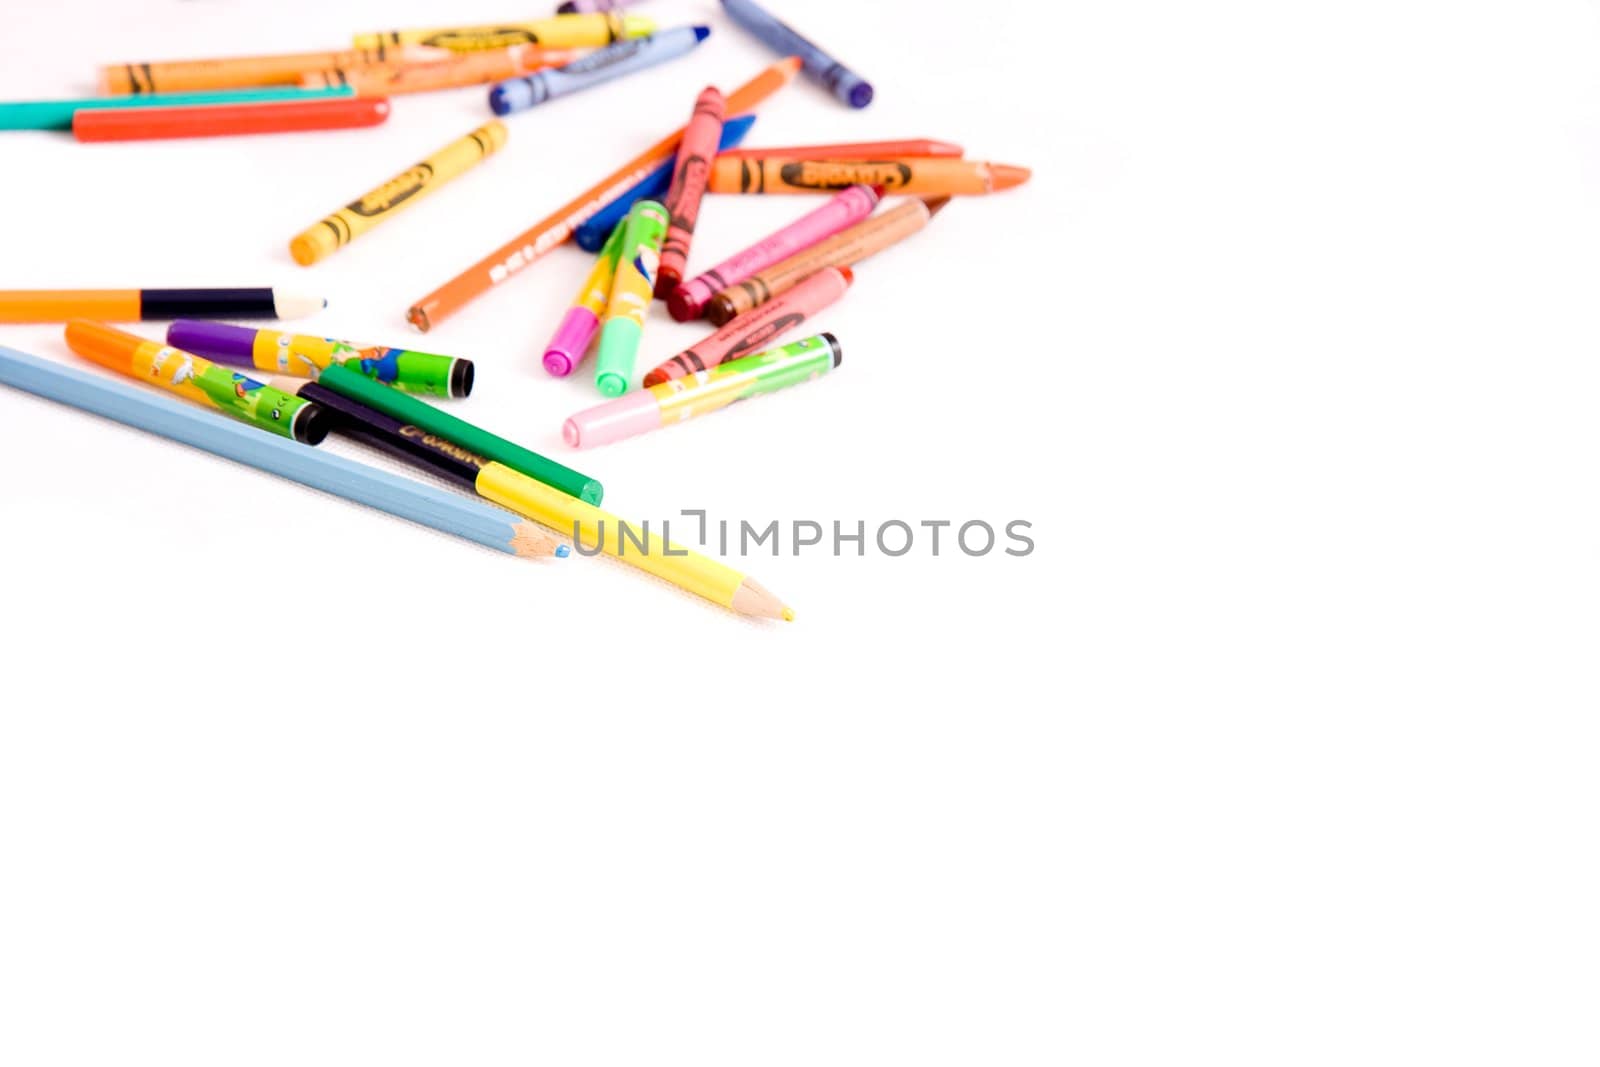 Felt-tip pens and pencils by pzRomashka